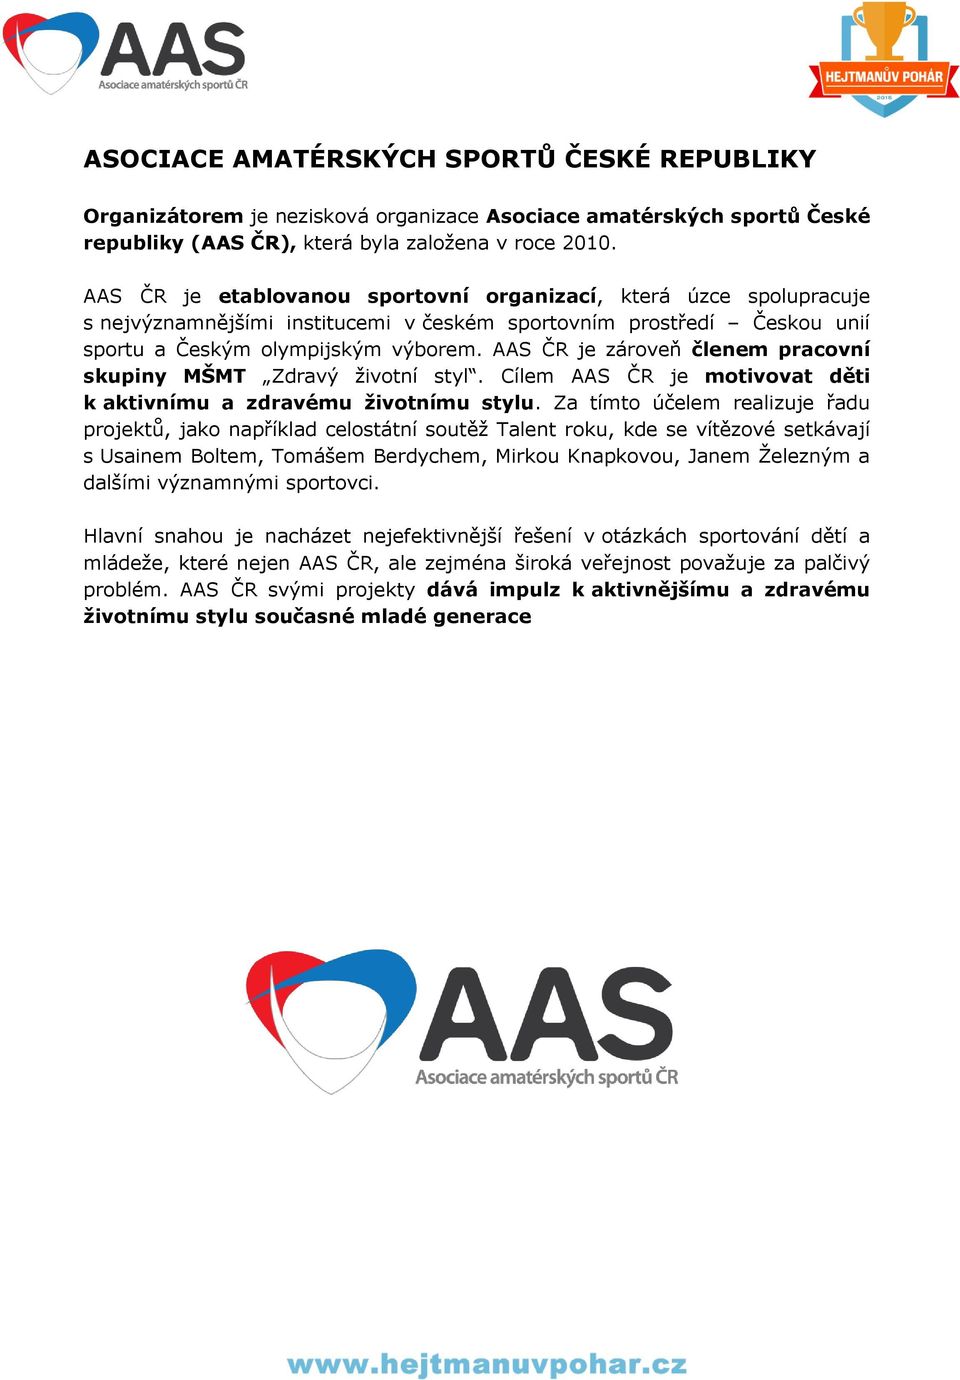 AAS ČR je zároveň členem pracovní skupiny MŠMT Zdravý životní styl. Cílem AAS ČR je motivovat děti k aktivnímu a zdravému životnímu stylu.